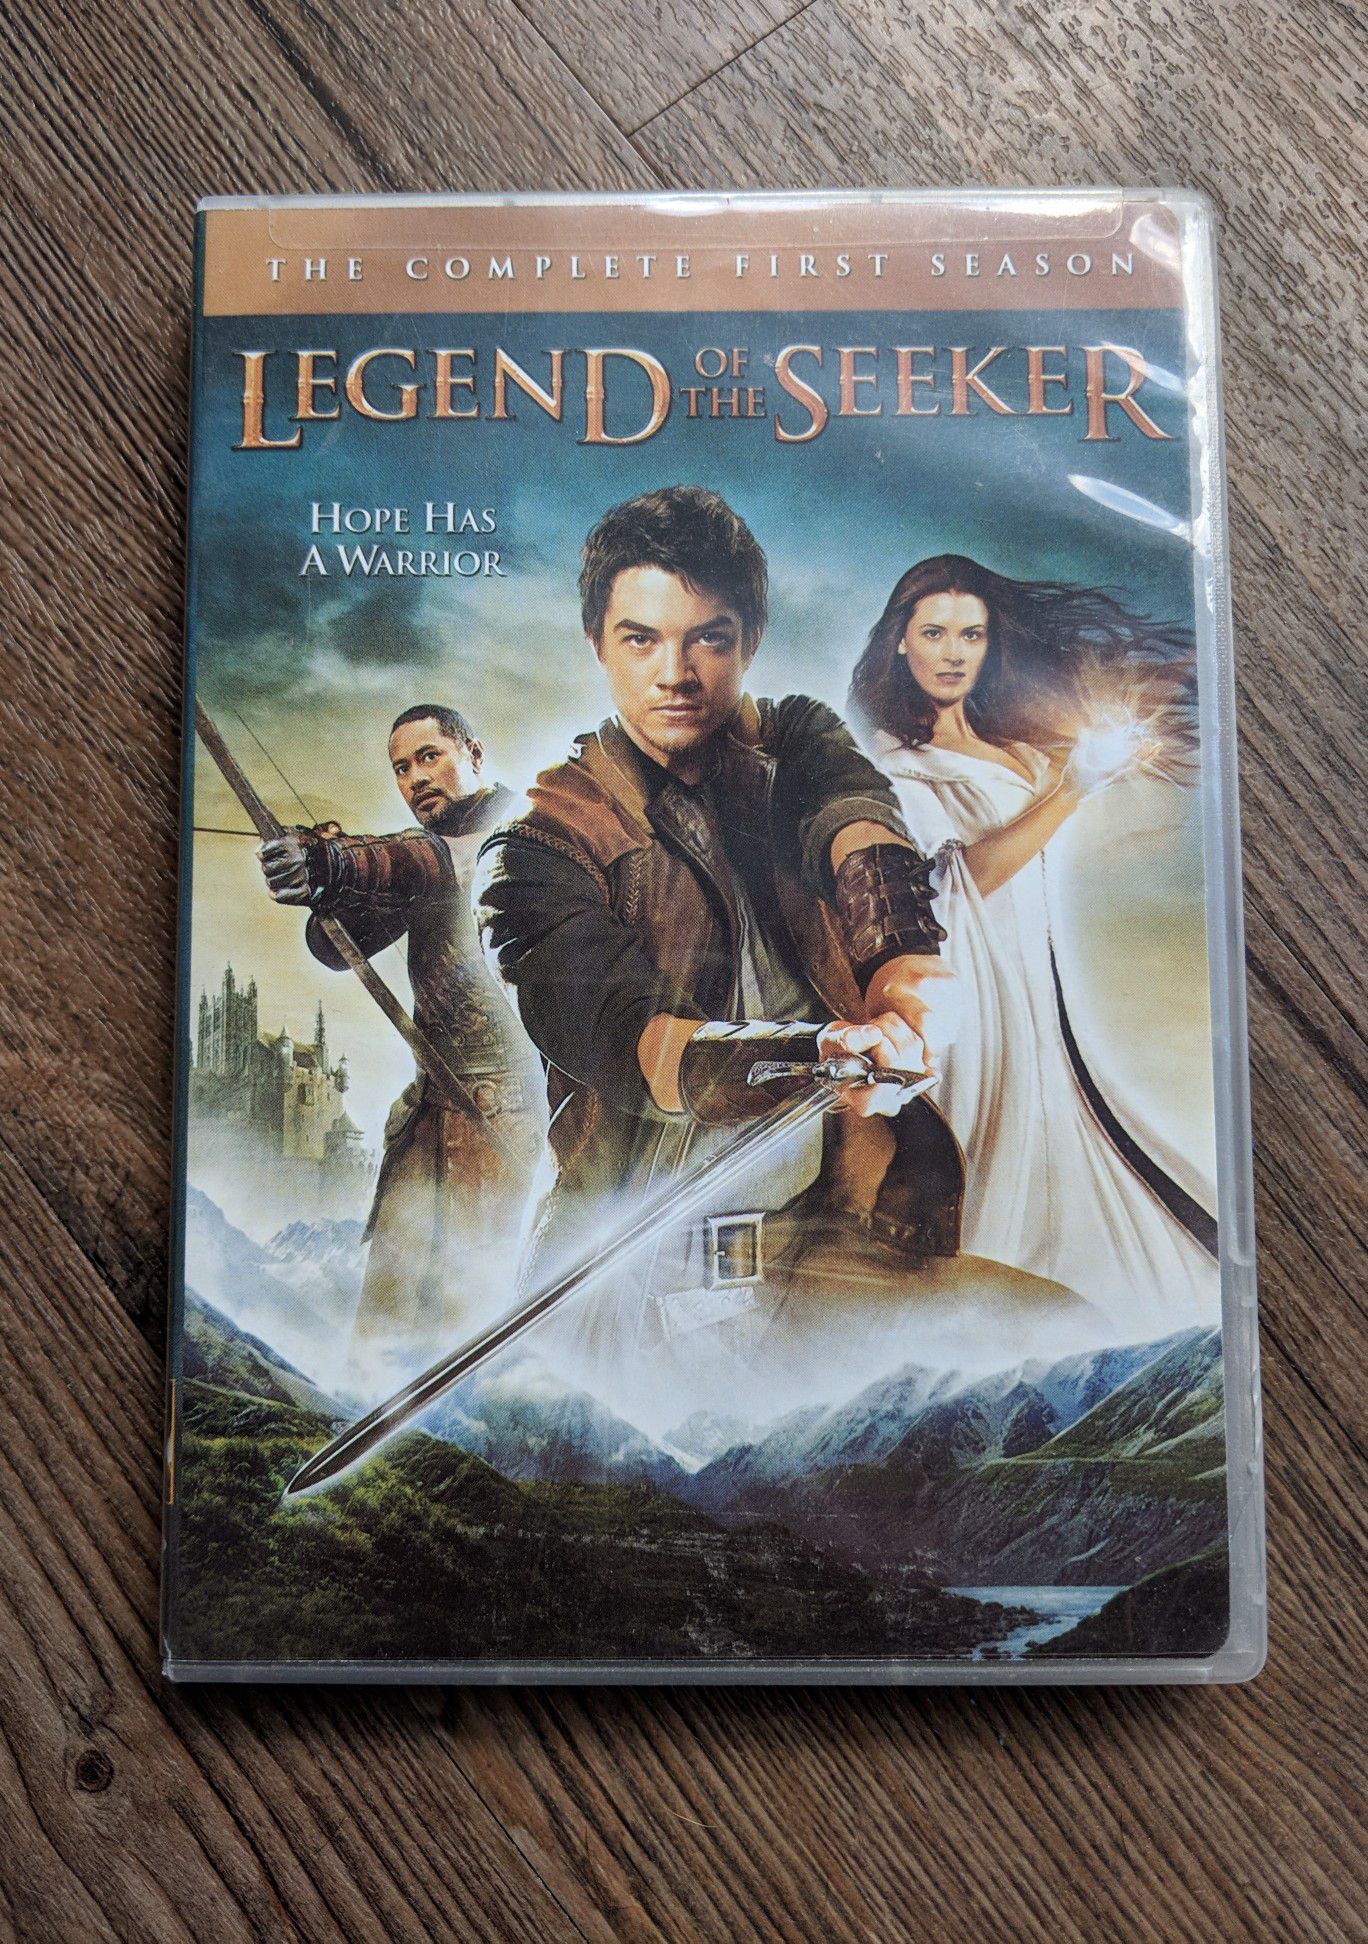 Legend of the Seeker: Season 1 DVD set